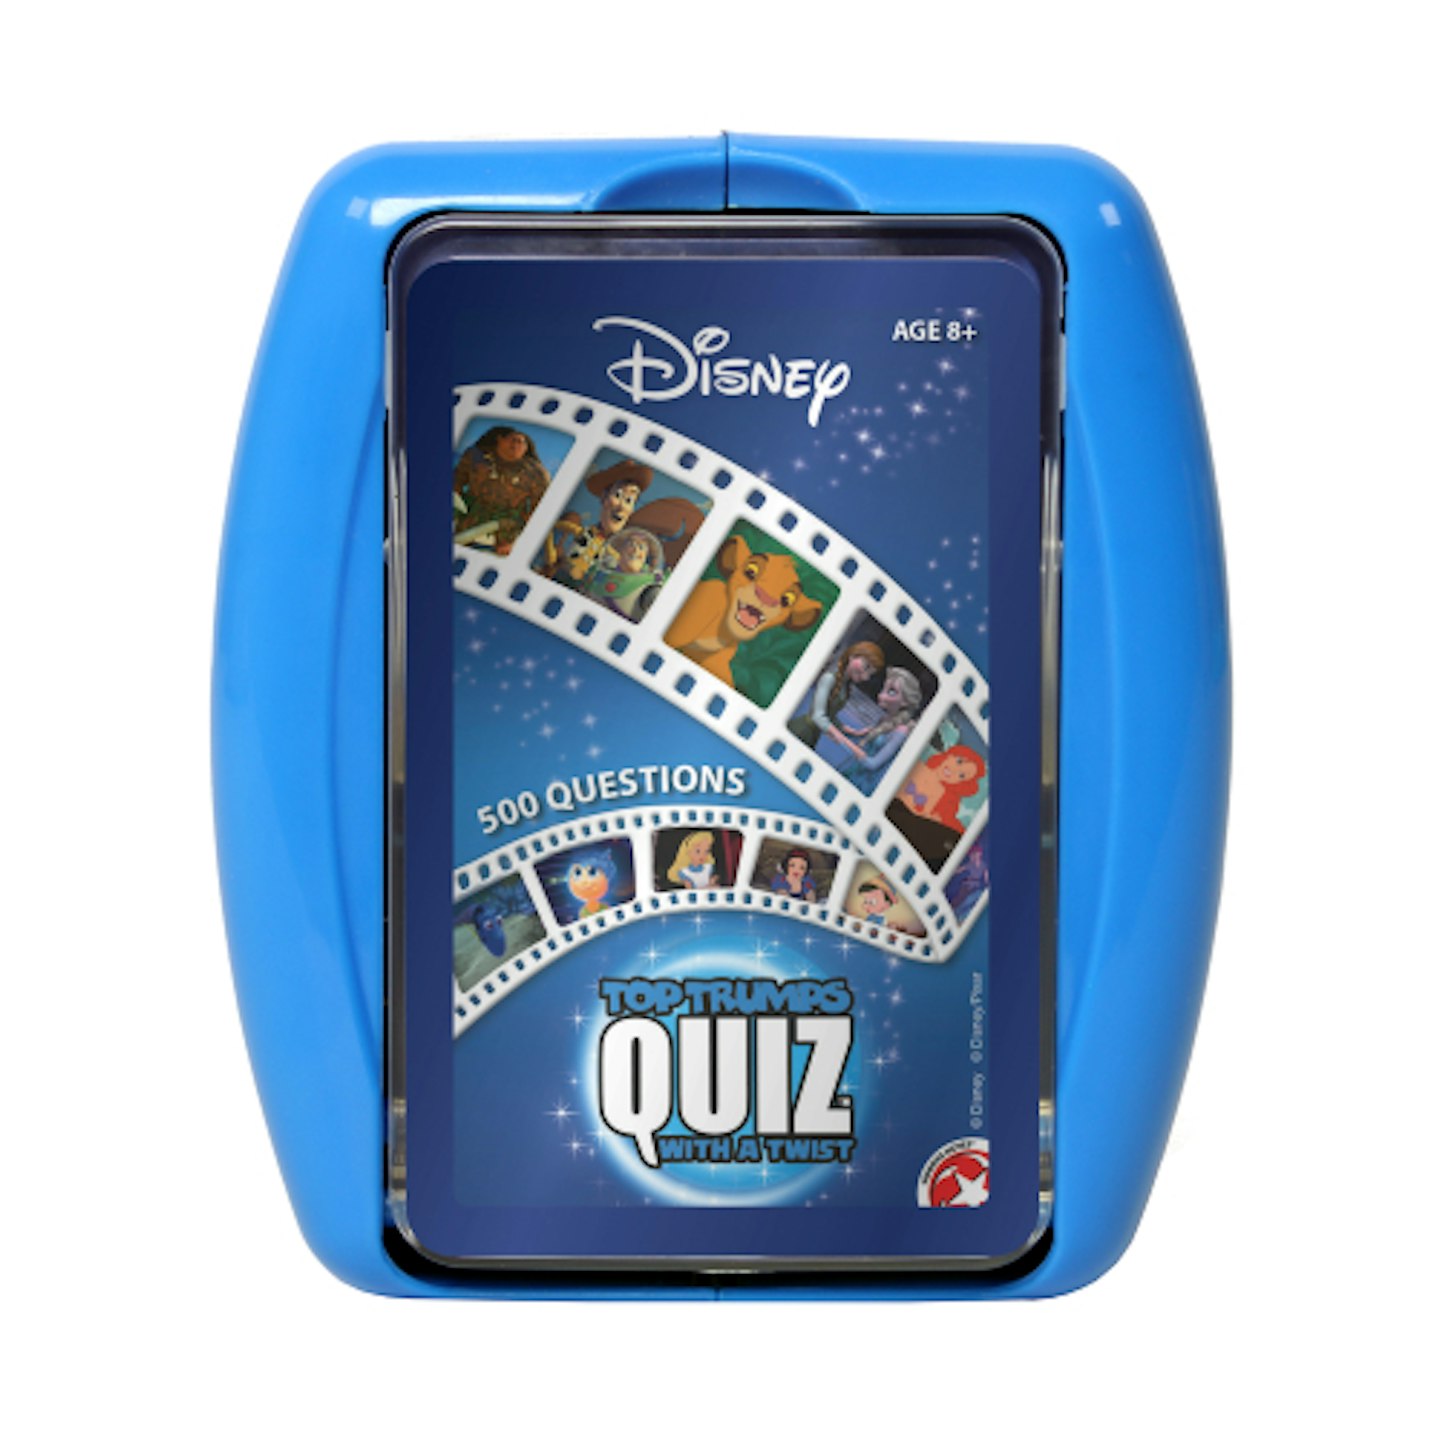 1x Disney Classics Top Trumps Quiz - RRP 9.99